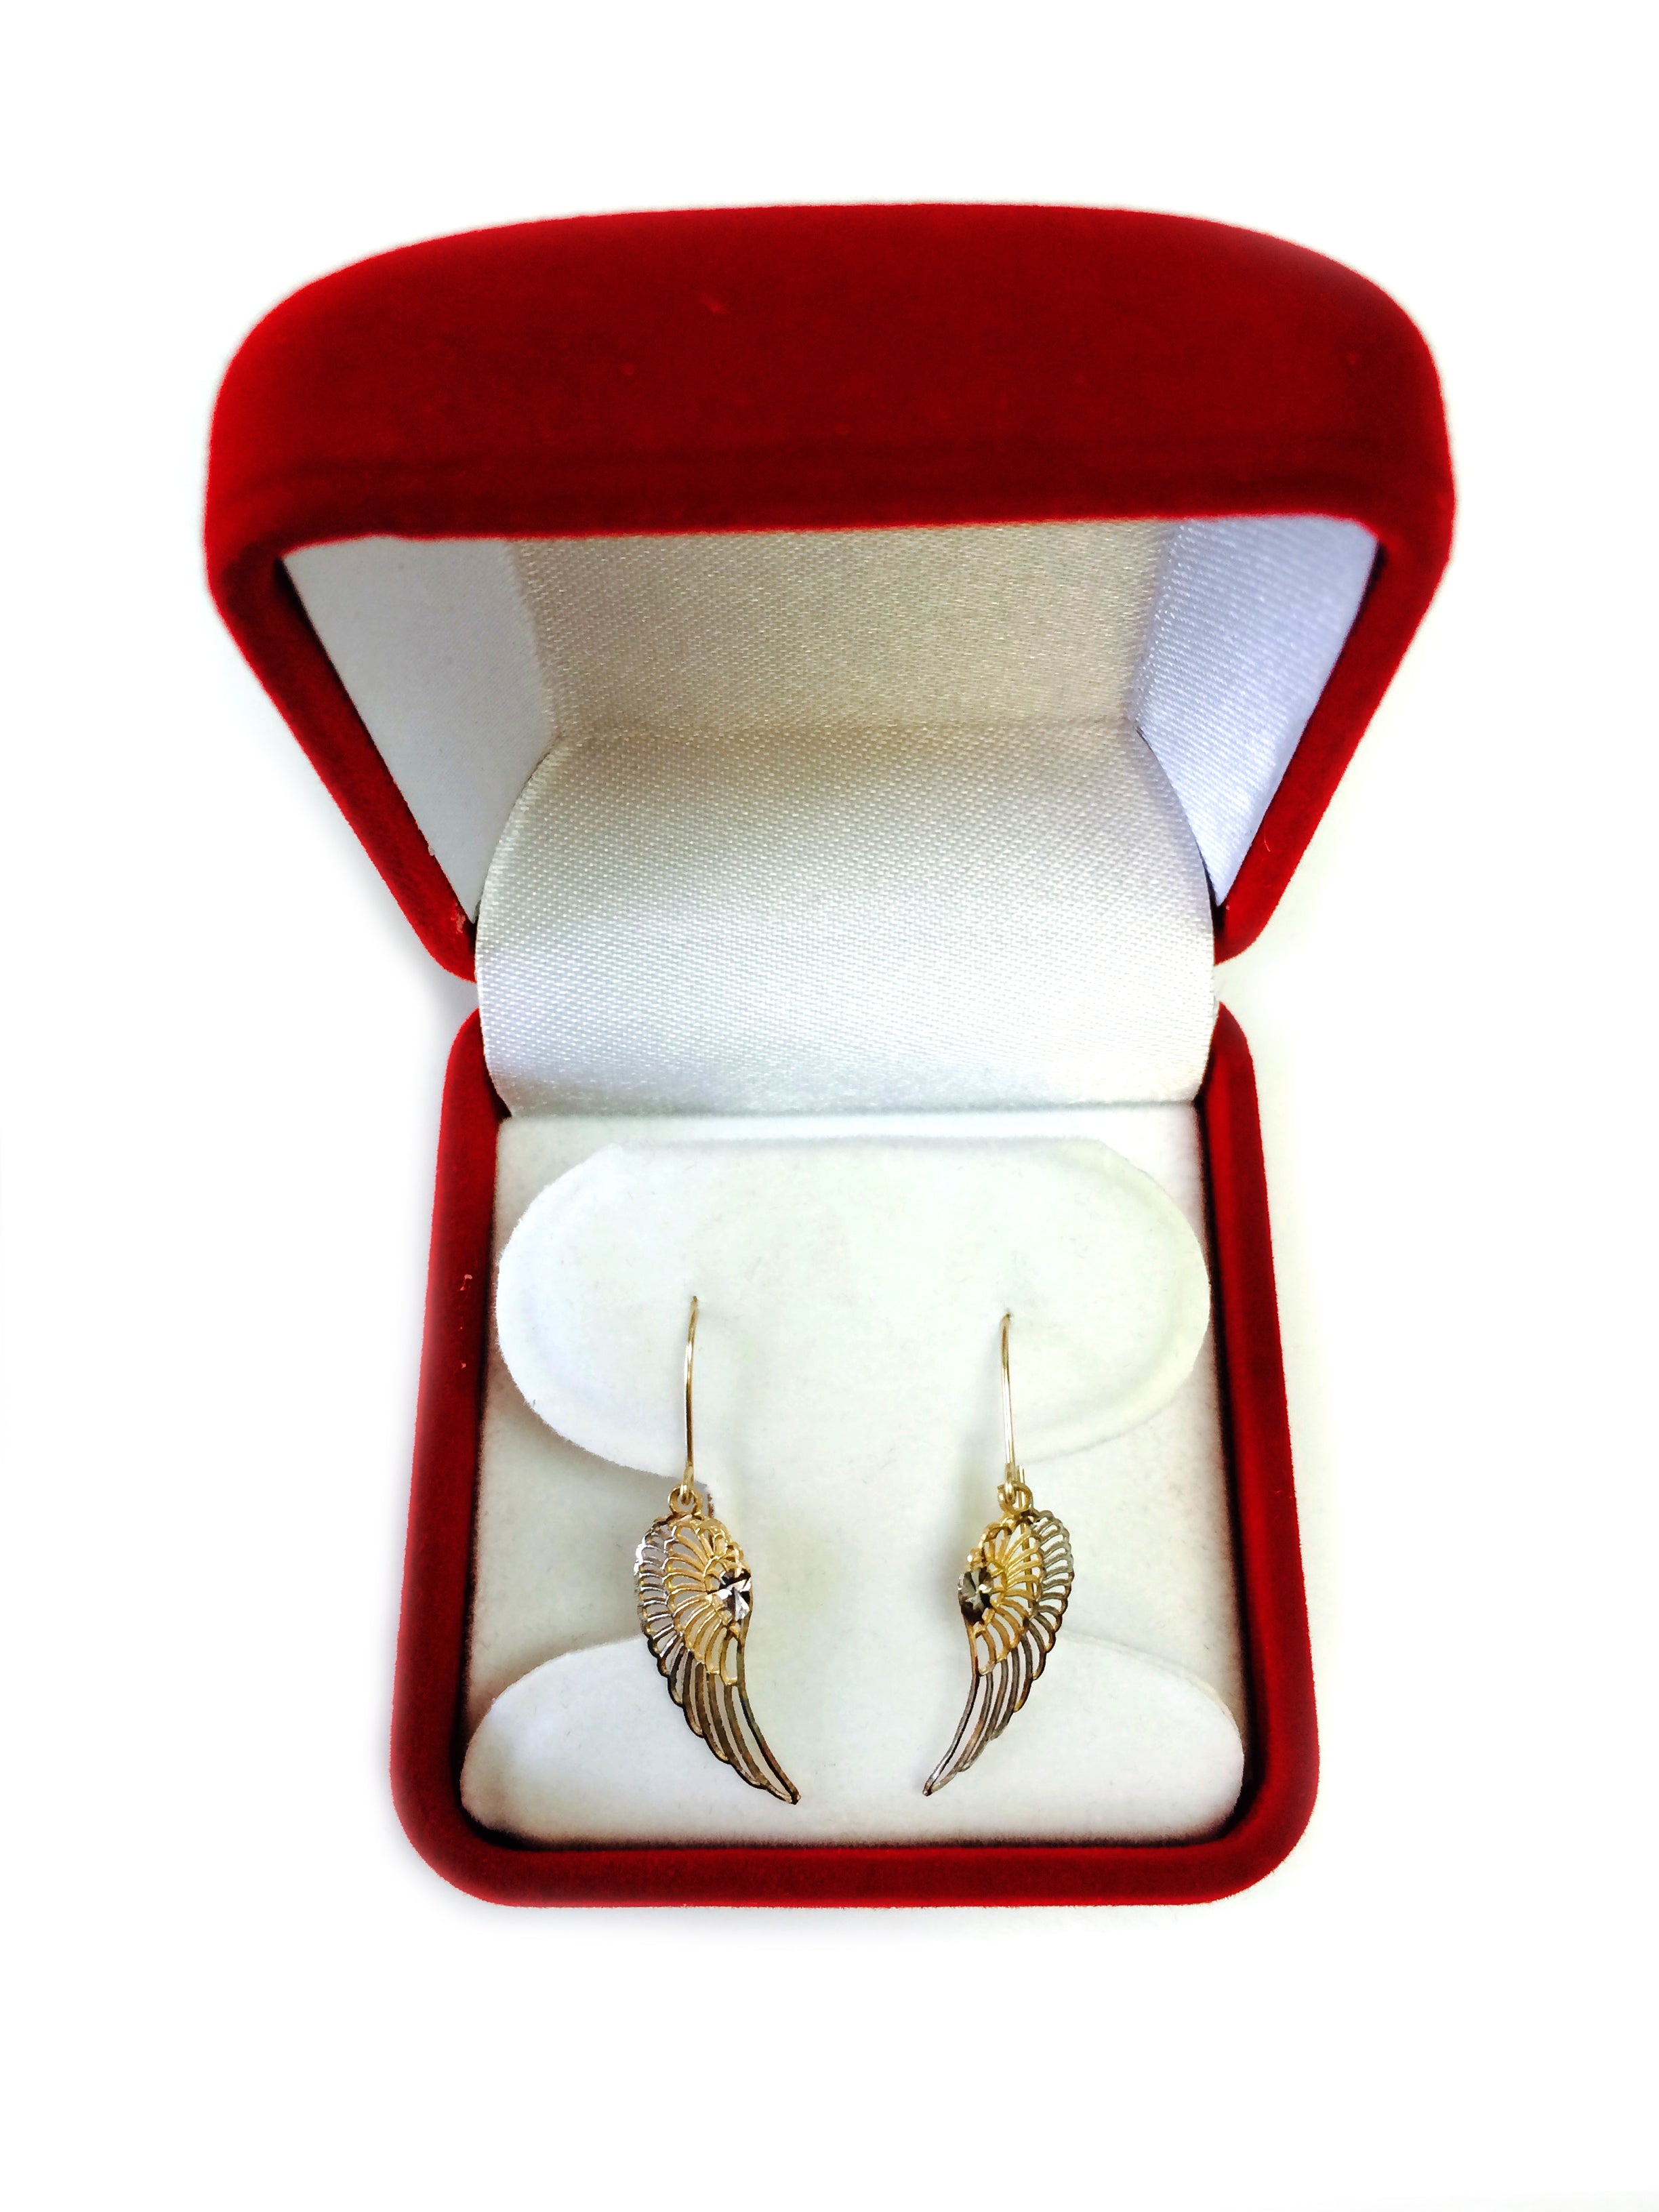 Orecchini pendenti con ali d'angelo in oro giallo e bianco da 10 carati a 2 toni, gioielli di design per uomini e donne